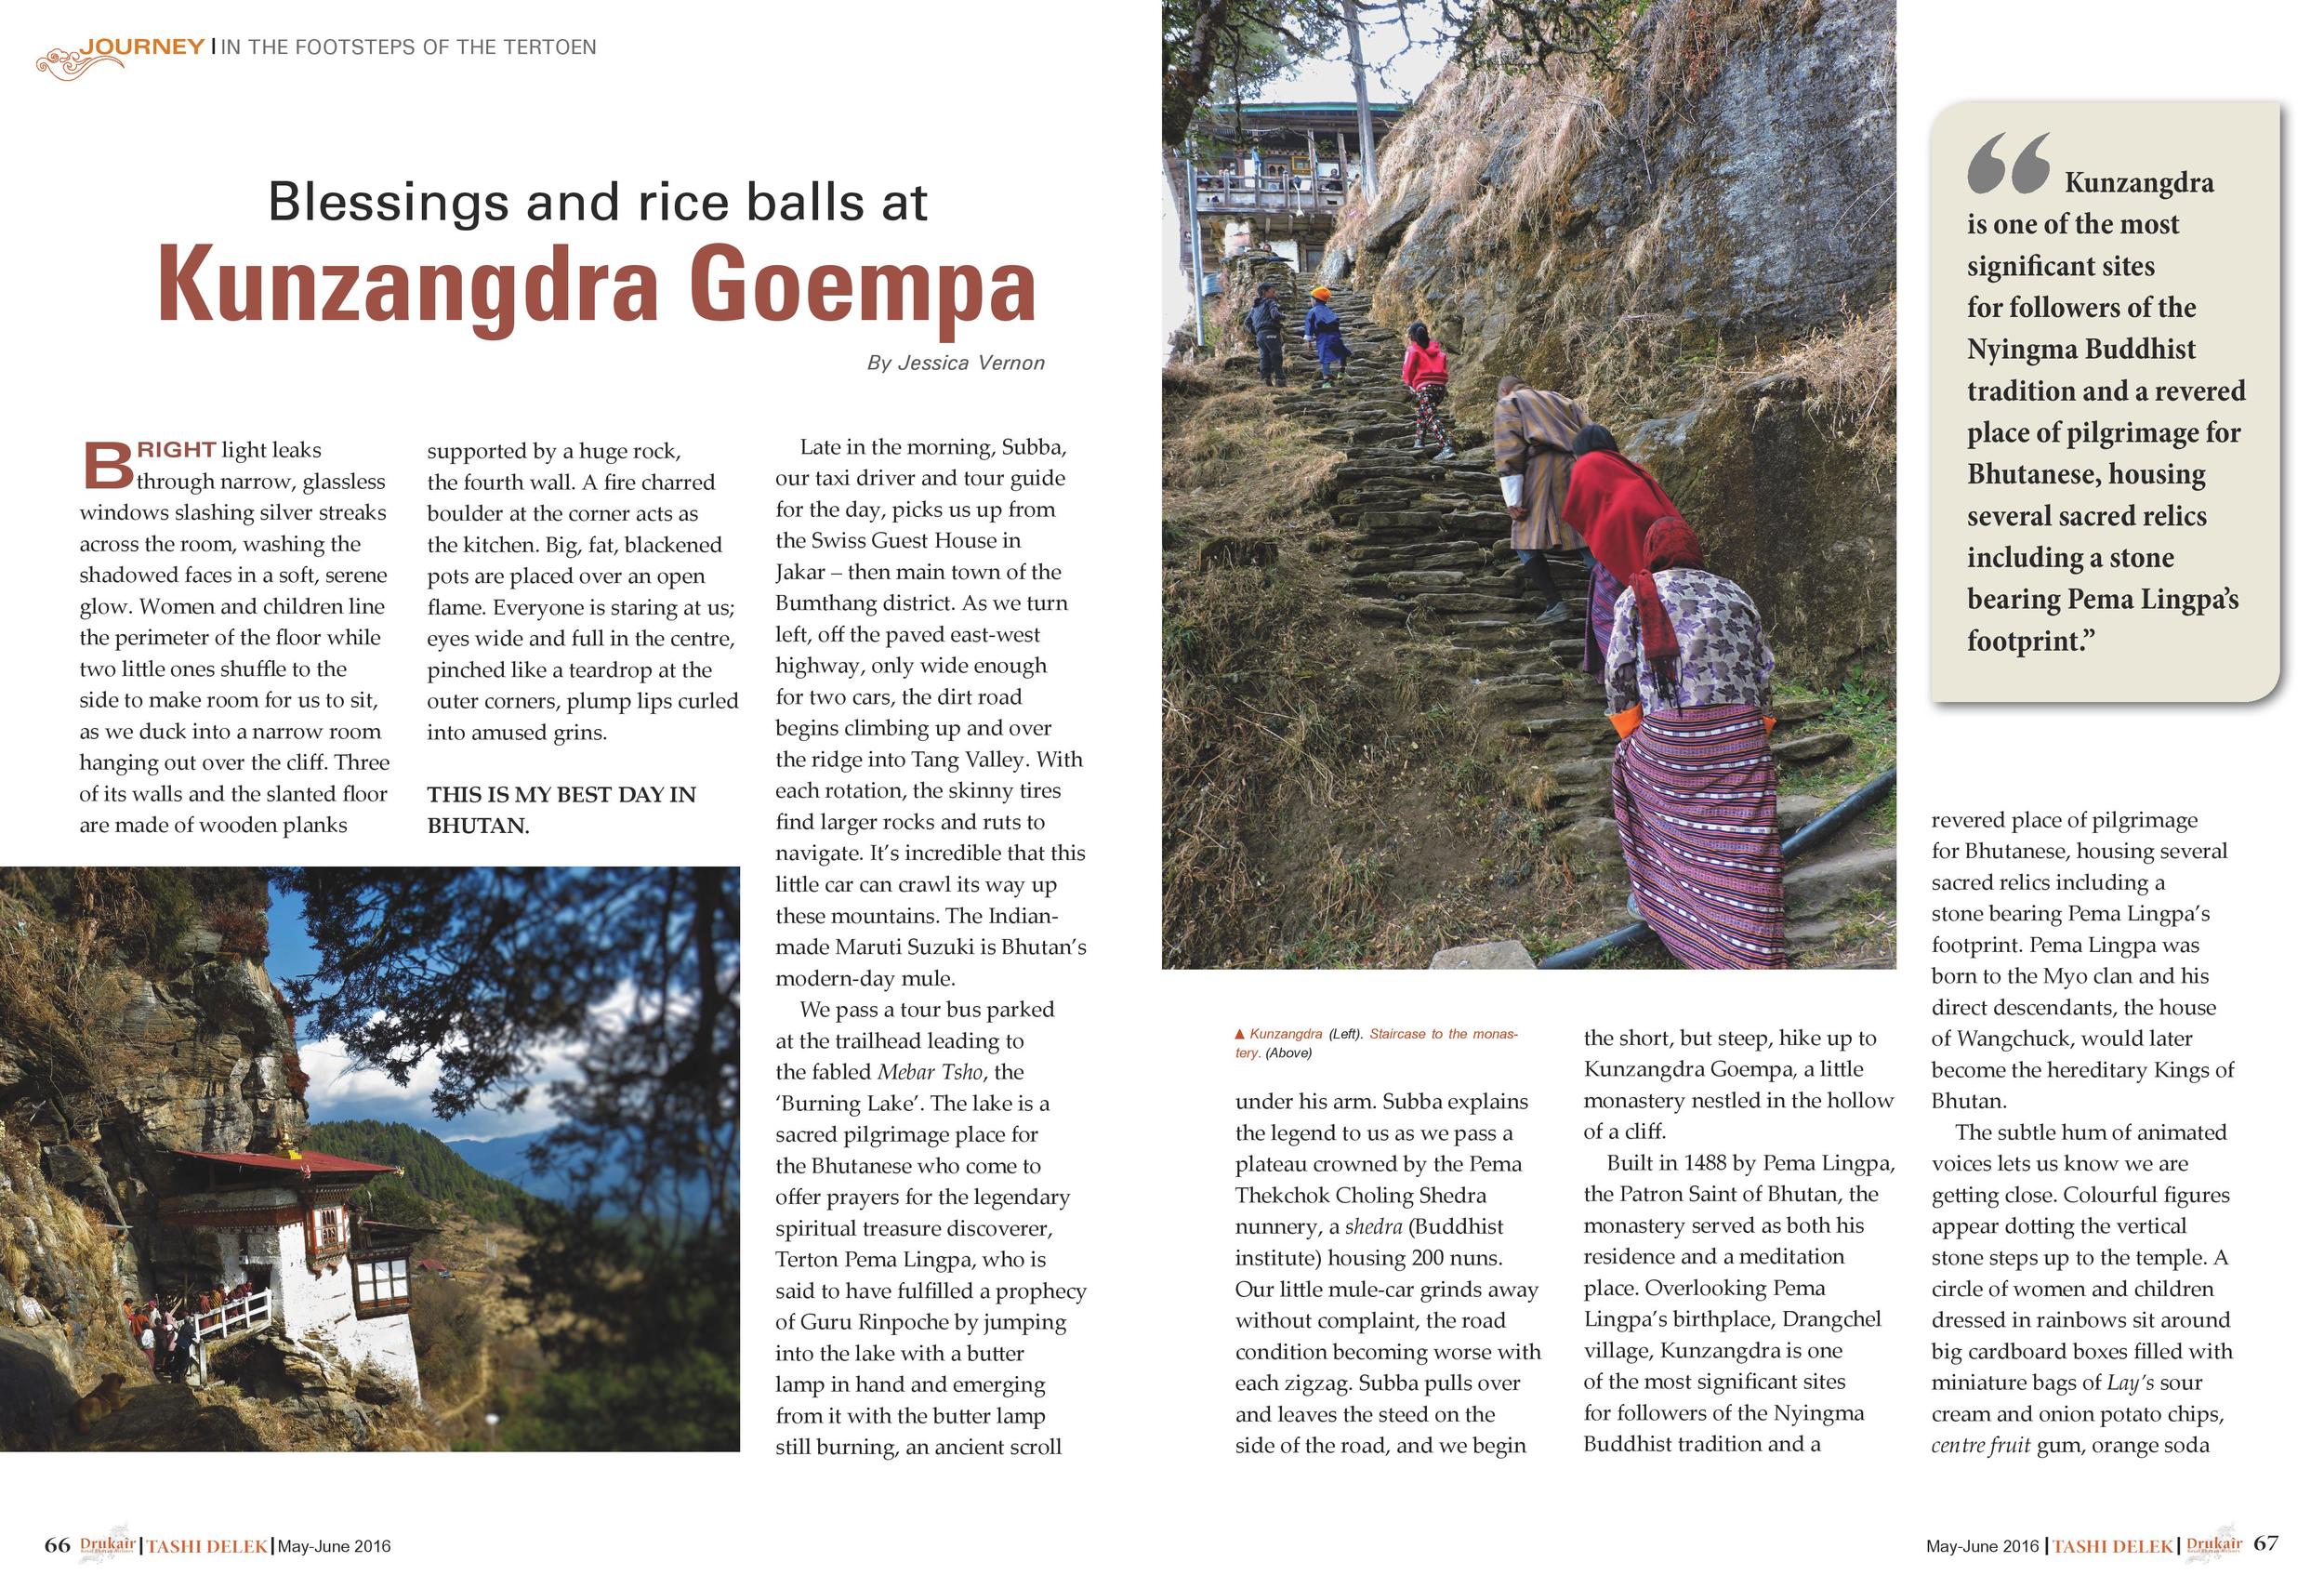 May/June 2016: Blessings and Rice Balls at Kunzangdra Goempa